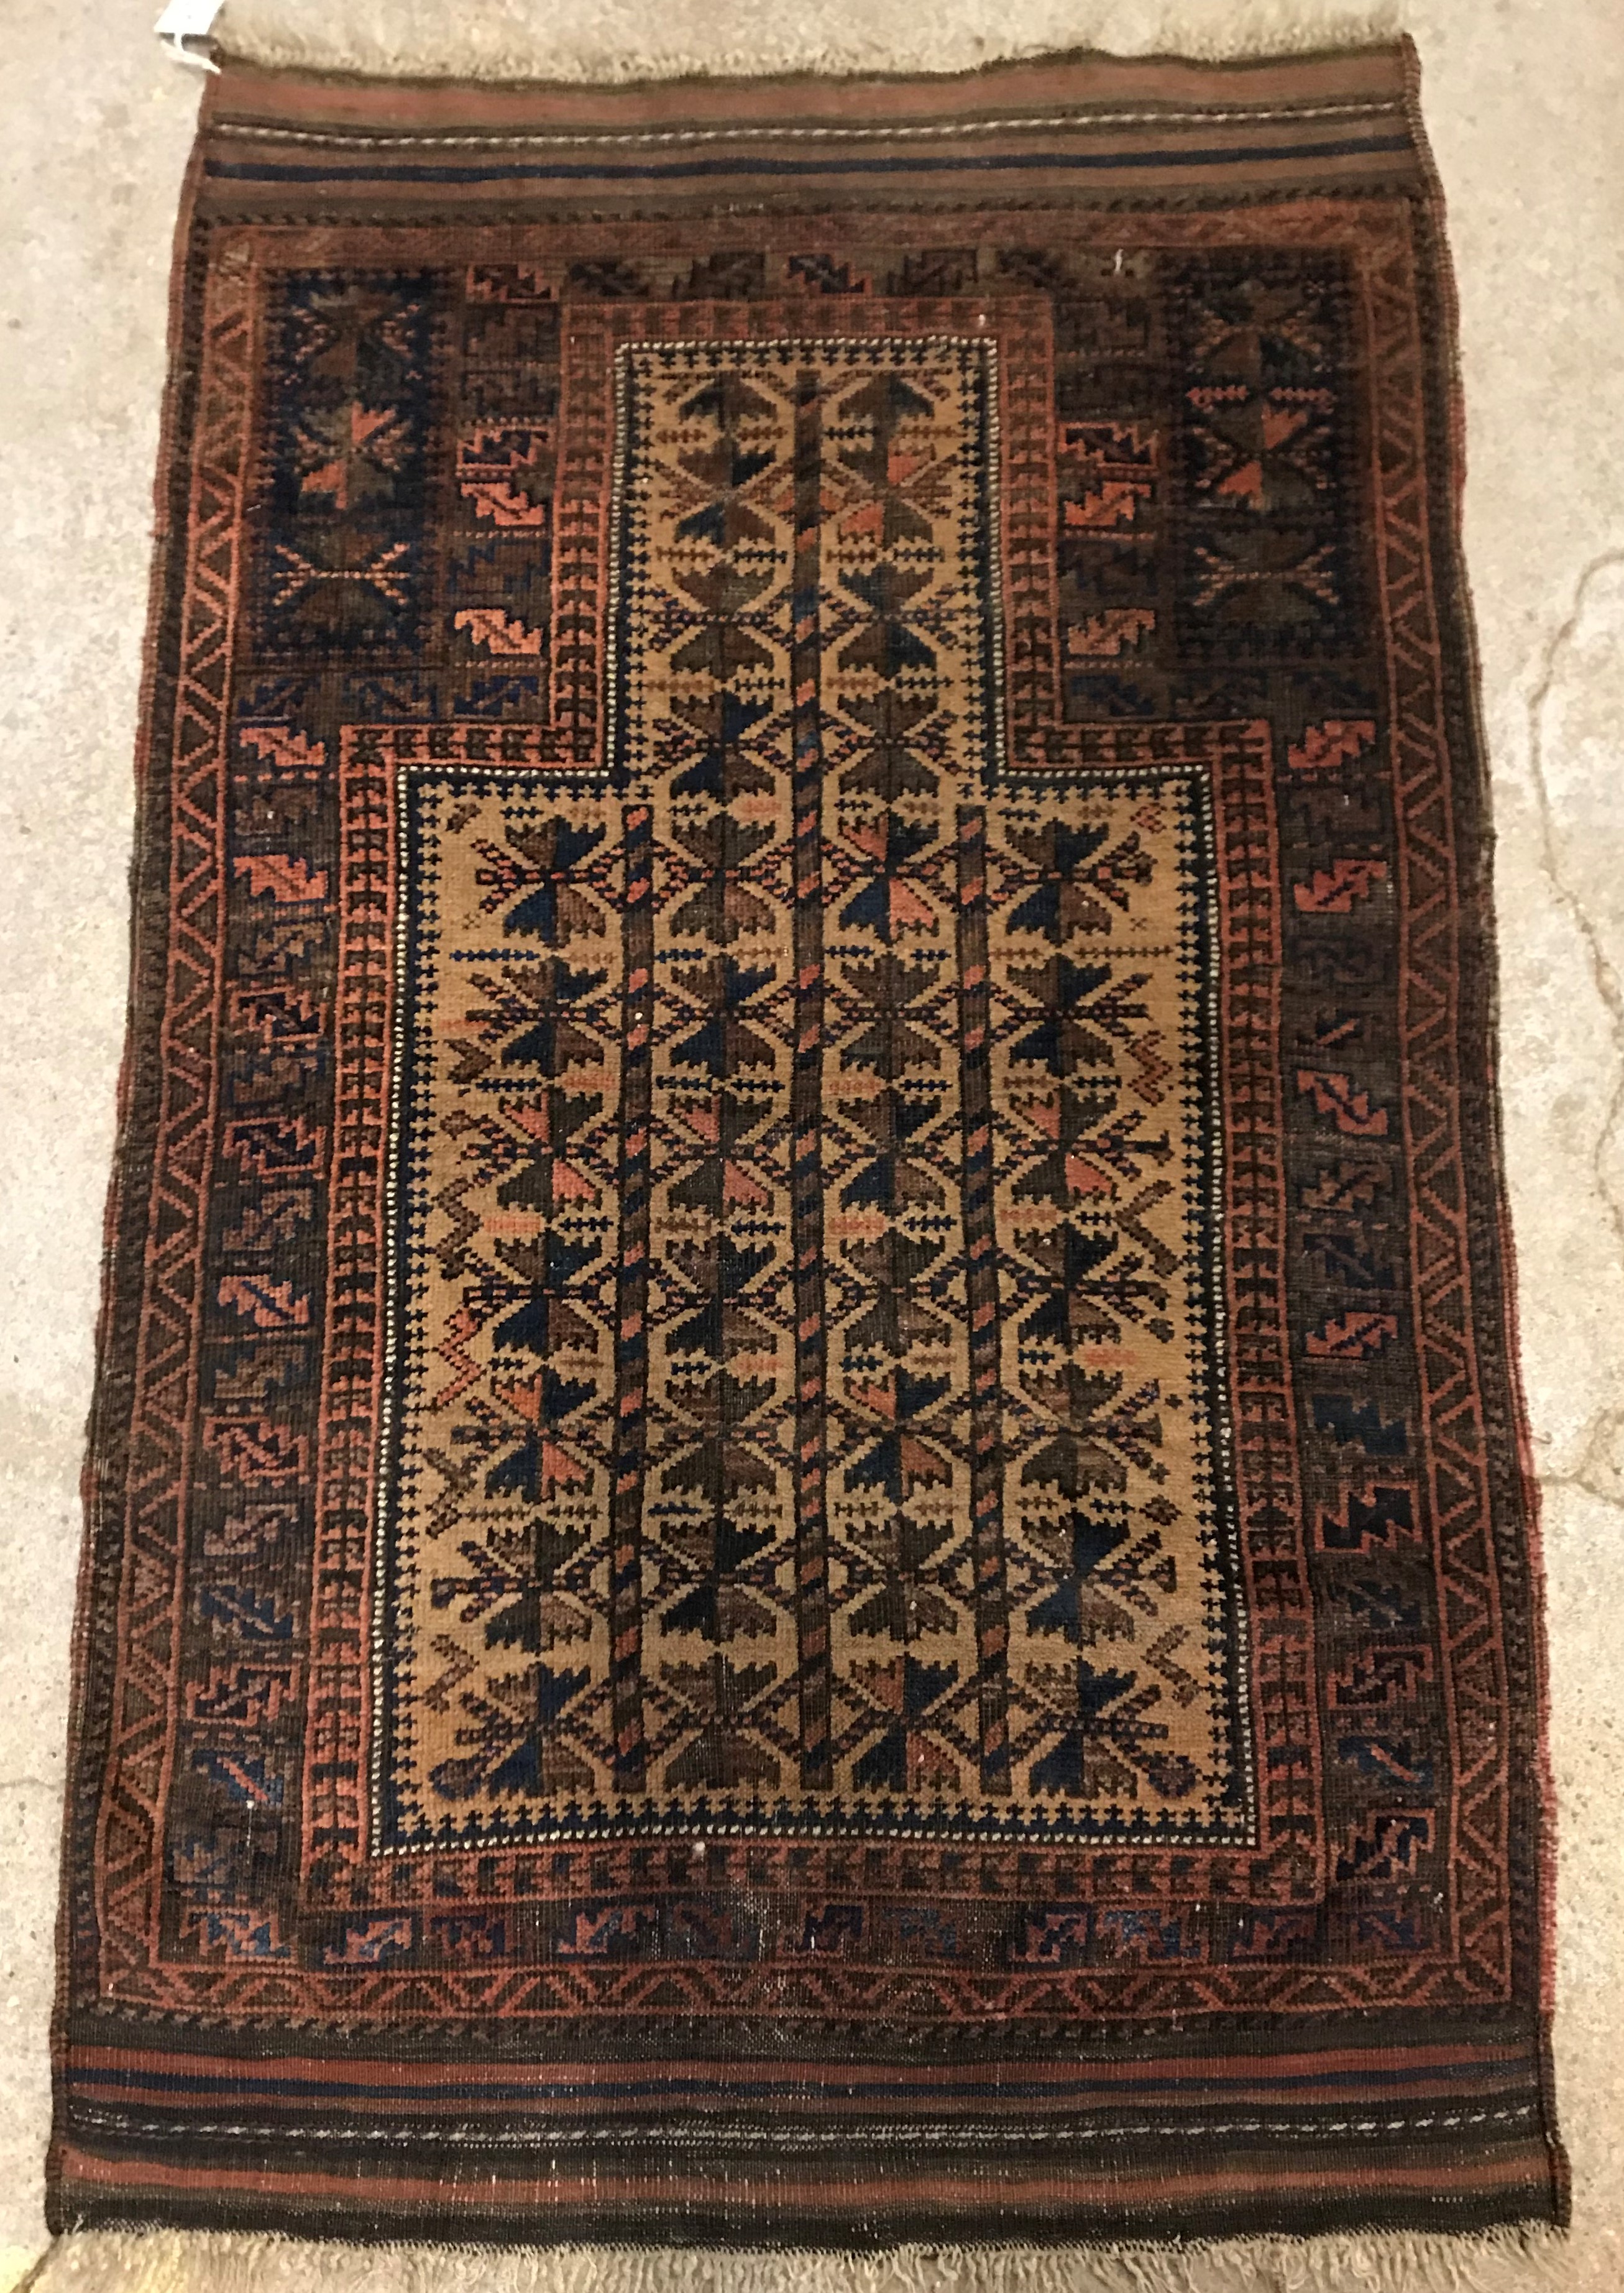 A Belouch tribal prayer rug,